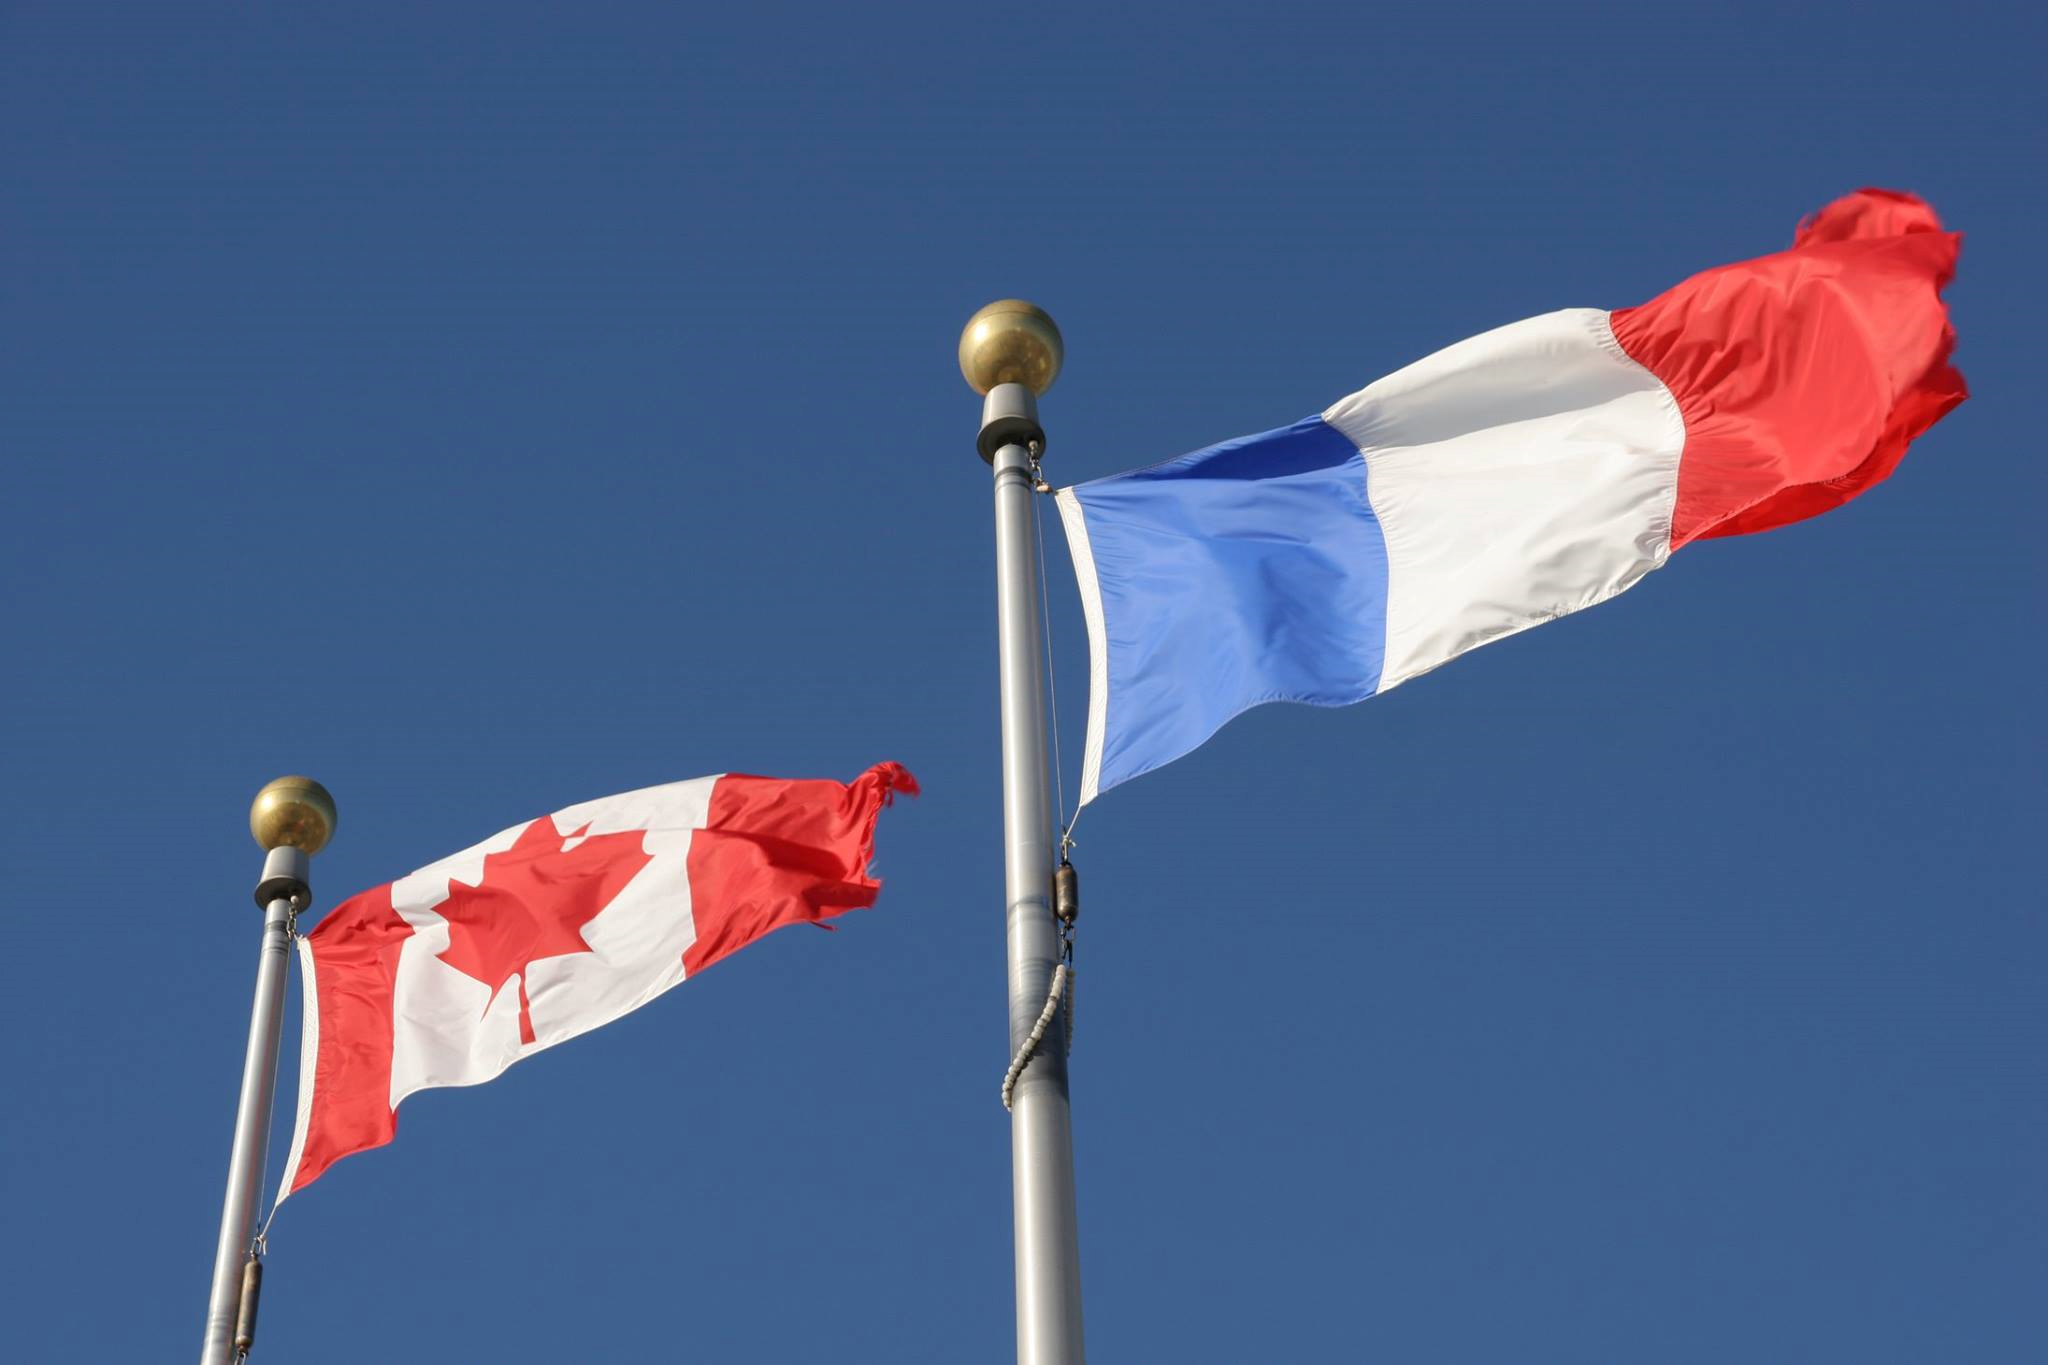 Ca french. Французы в Канаде. Канада английский и французский. Два официальных языка в Канаде.